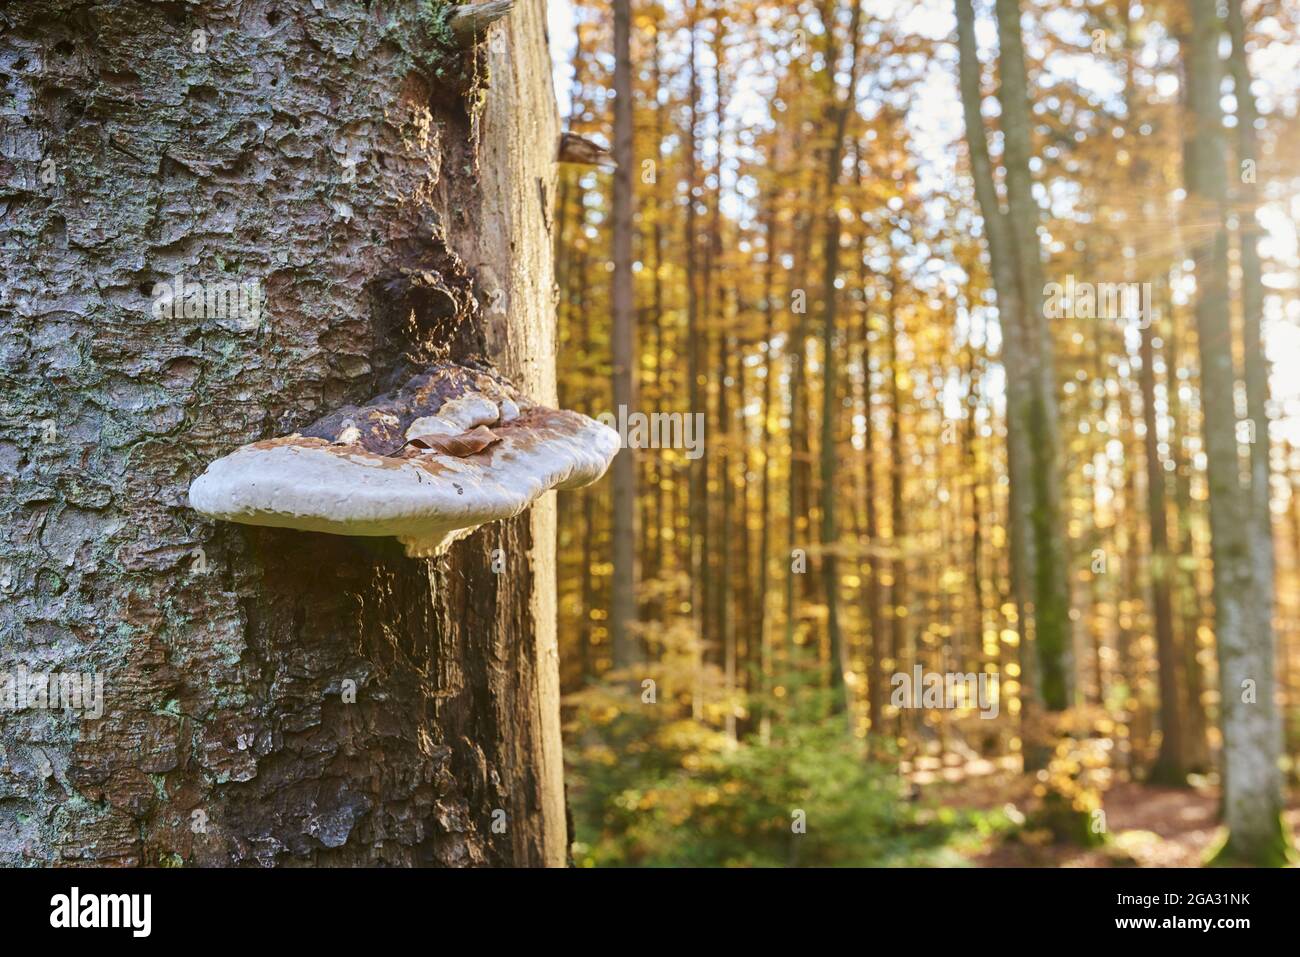 Conk à ceinture rouge (Fomitopsis pinicola) champignon sur un tronc d'arbre; Bavière, Allemagne Banque D'Images